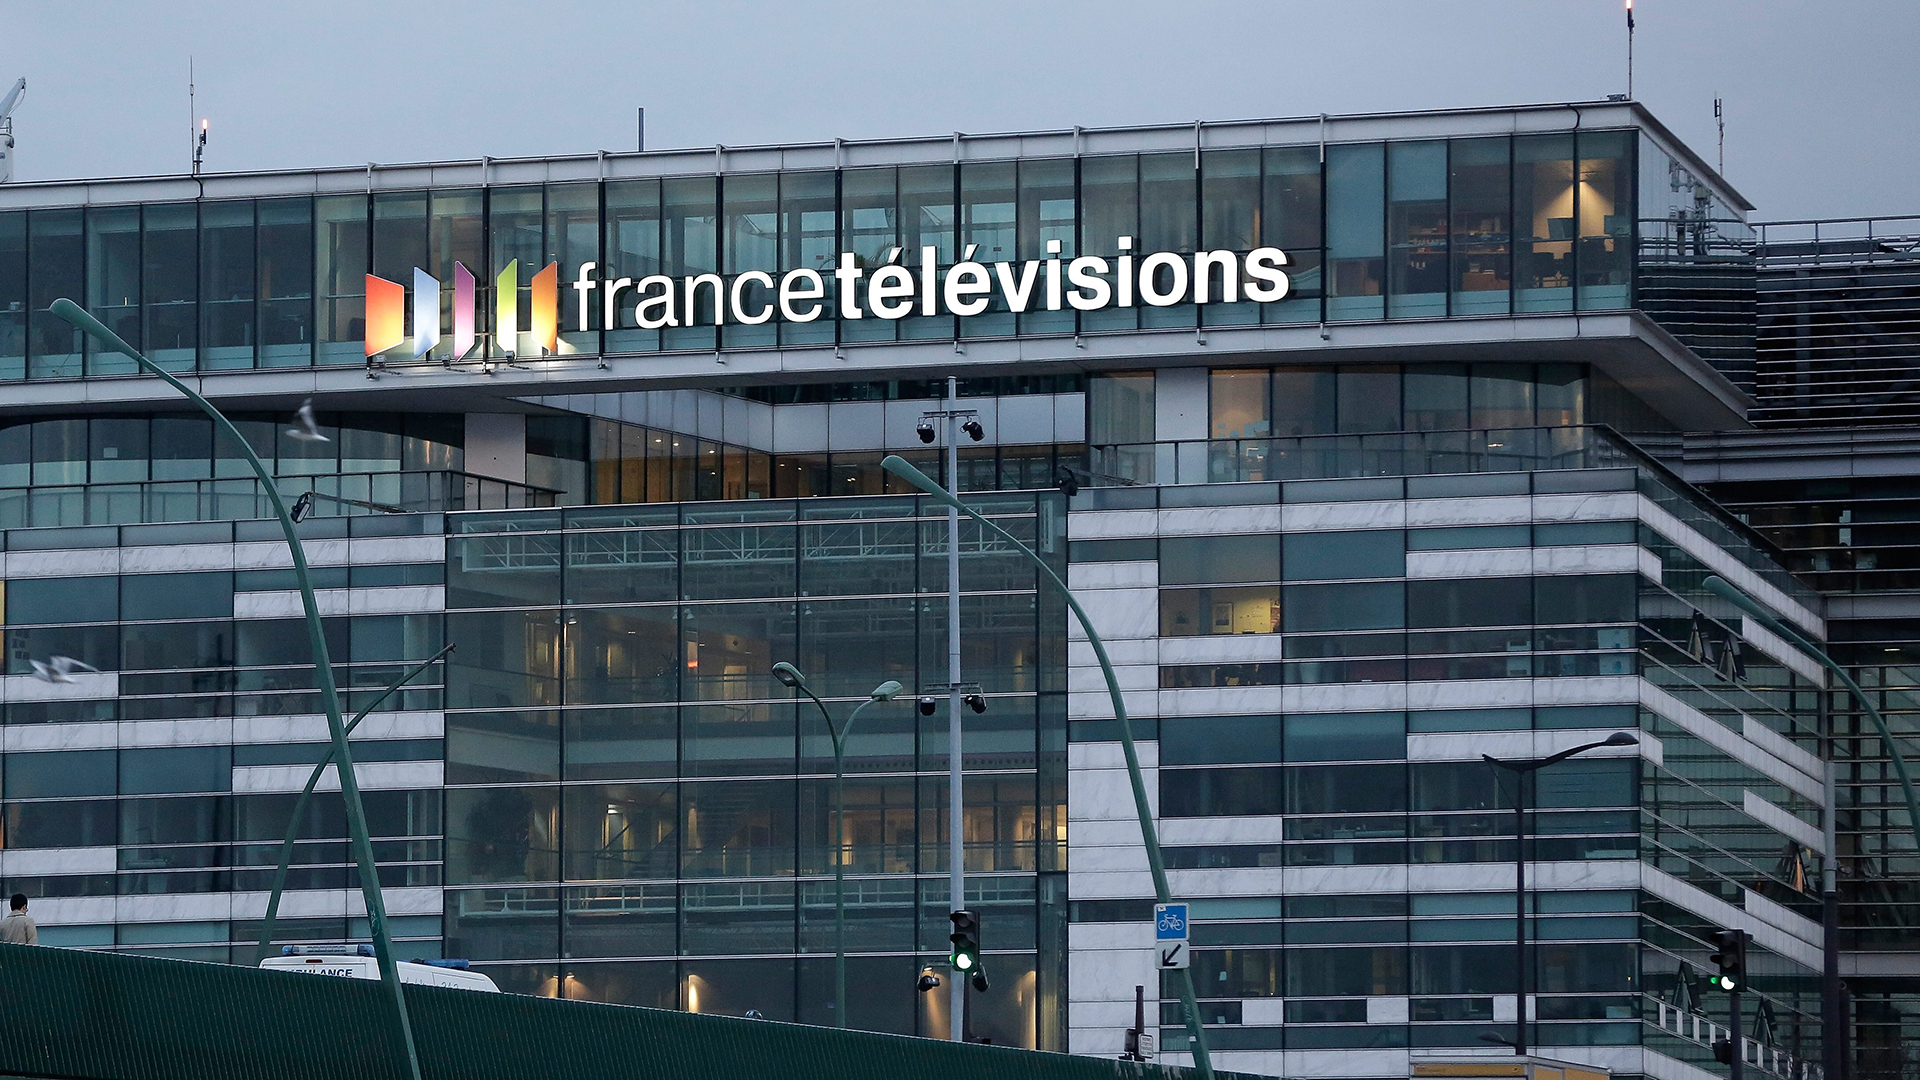 Hauptquartier "France Television" | picture alliance / maxppp